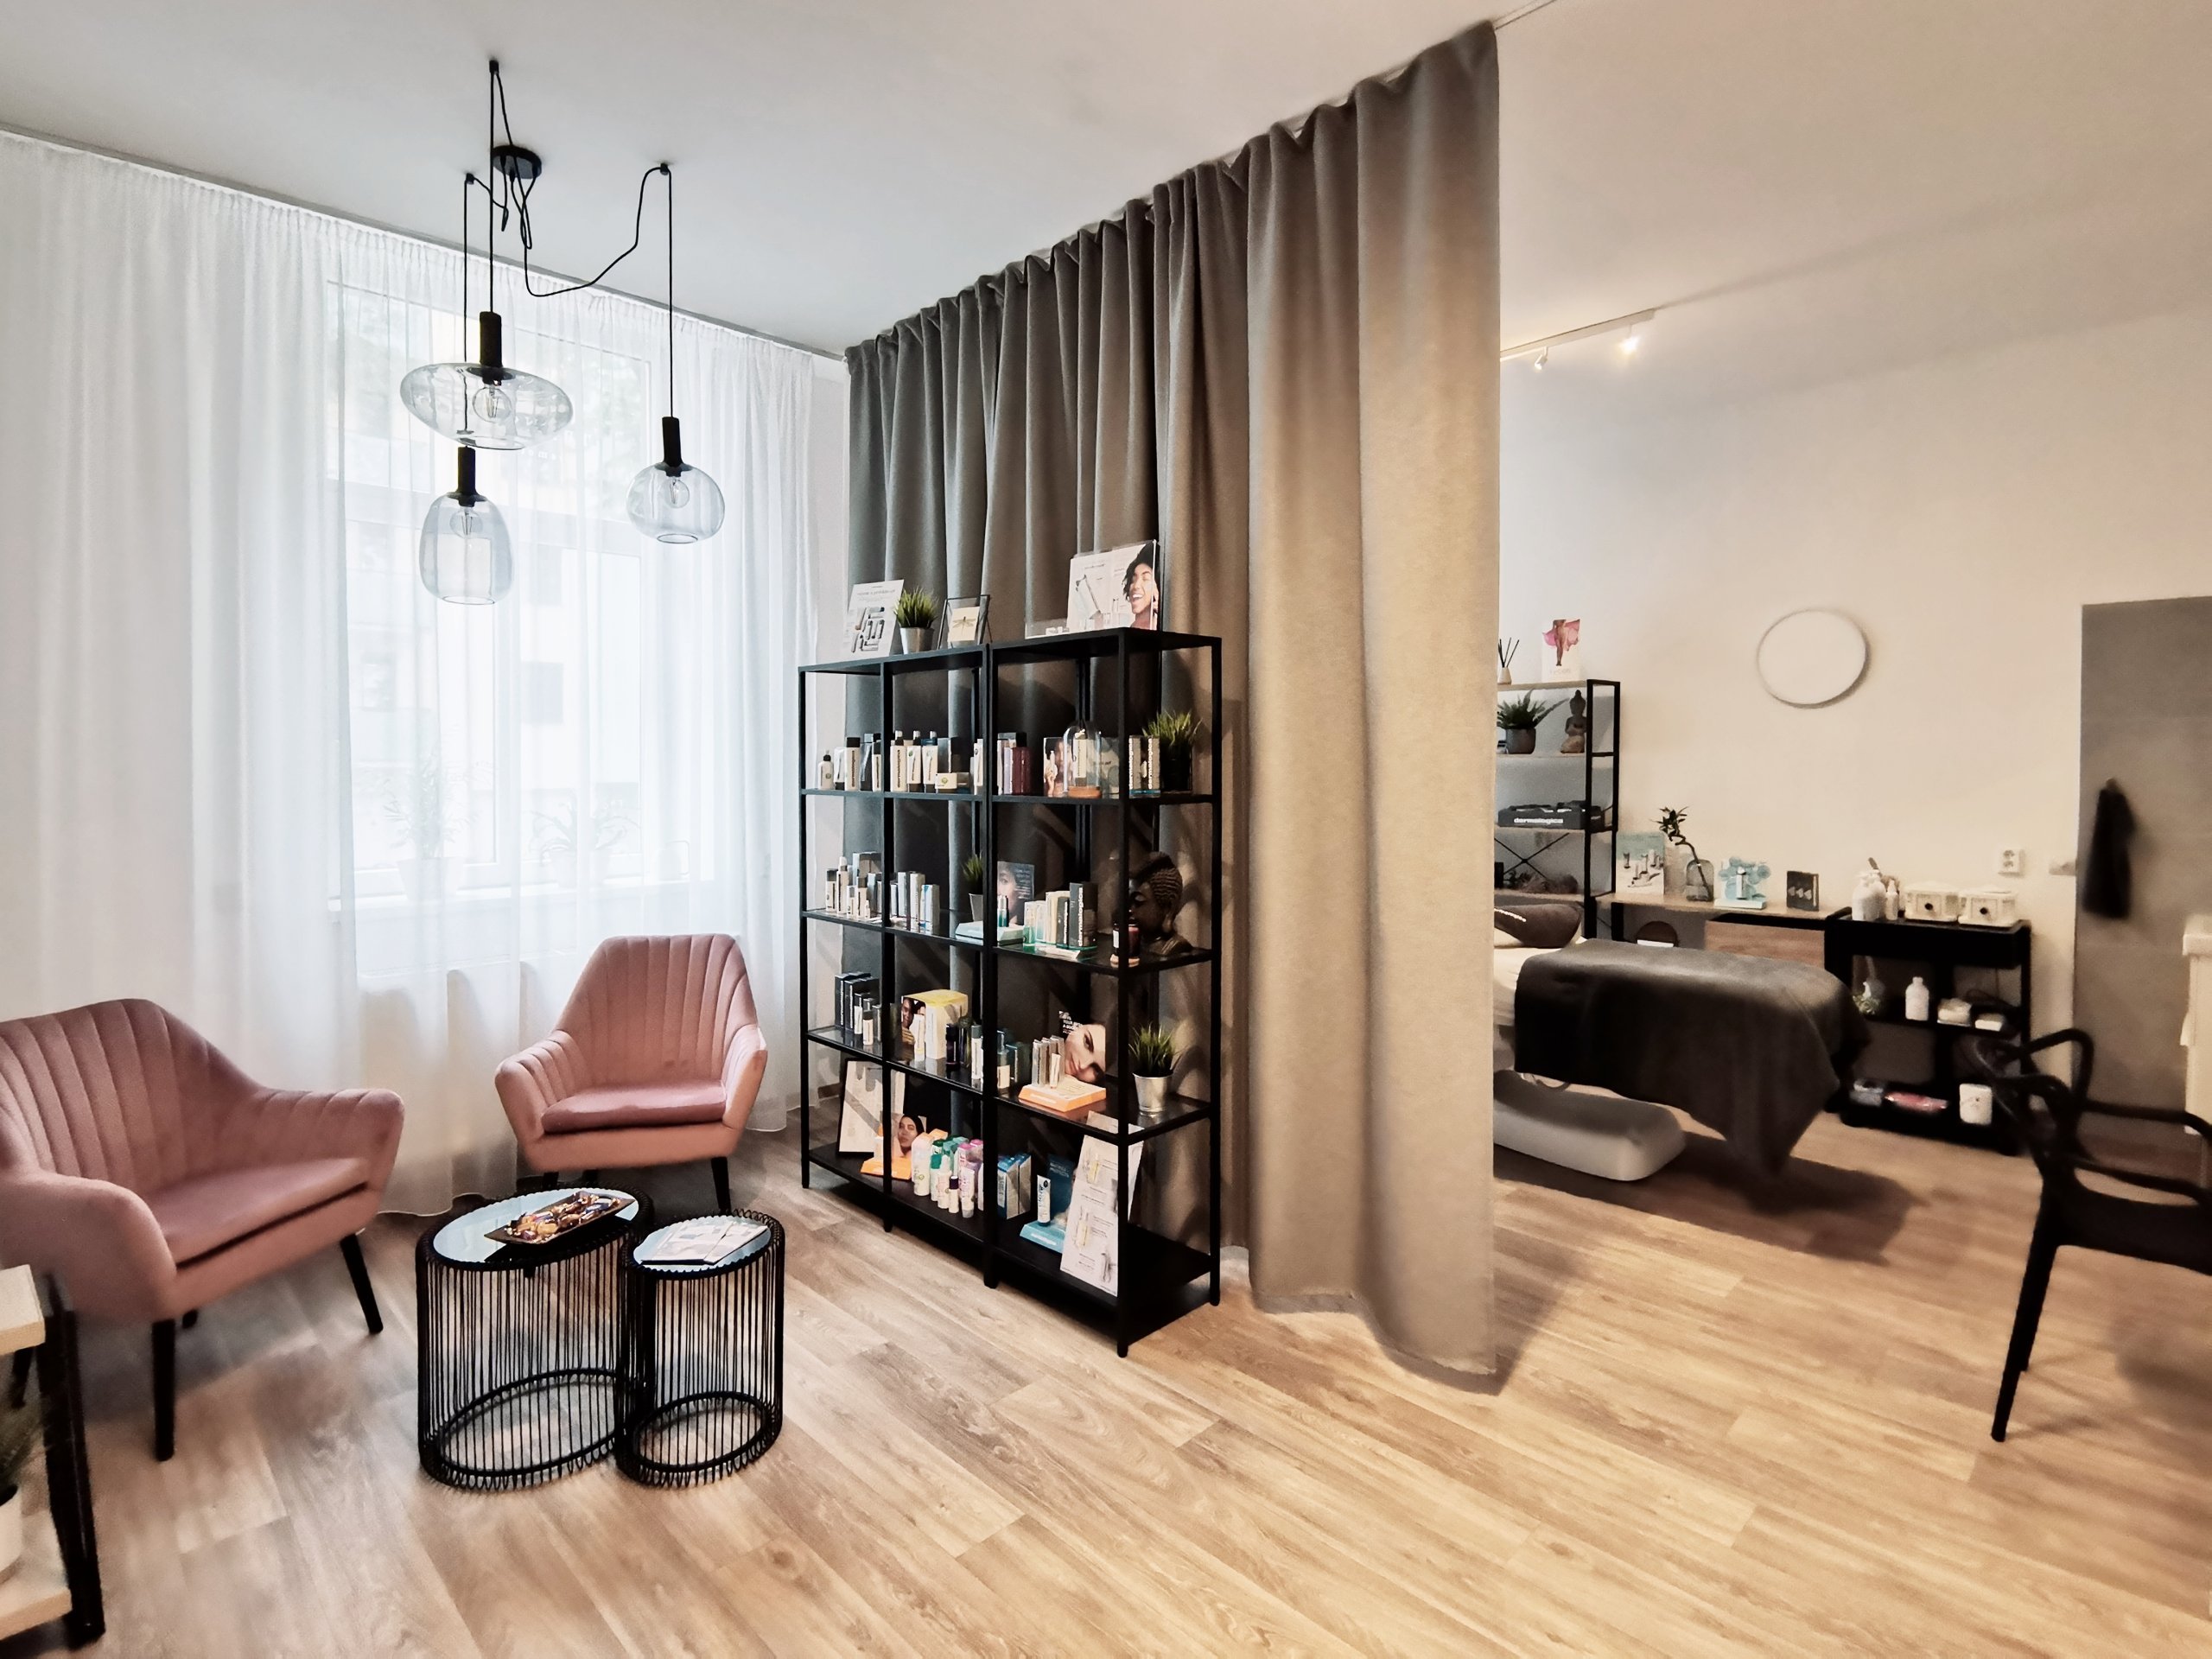 Moderní interiér nového salonu v&nbsp;Liberci vychází z&nbsp;konceptu netradičního materiálového řešení. U&nbsp;kosmetických salonů jste zvyklí na bílou barvu…